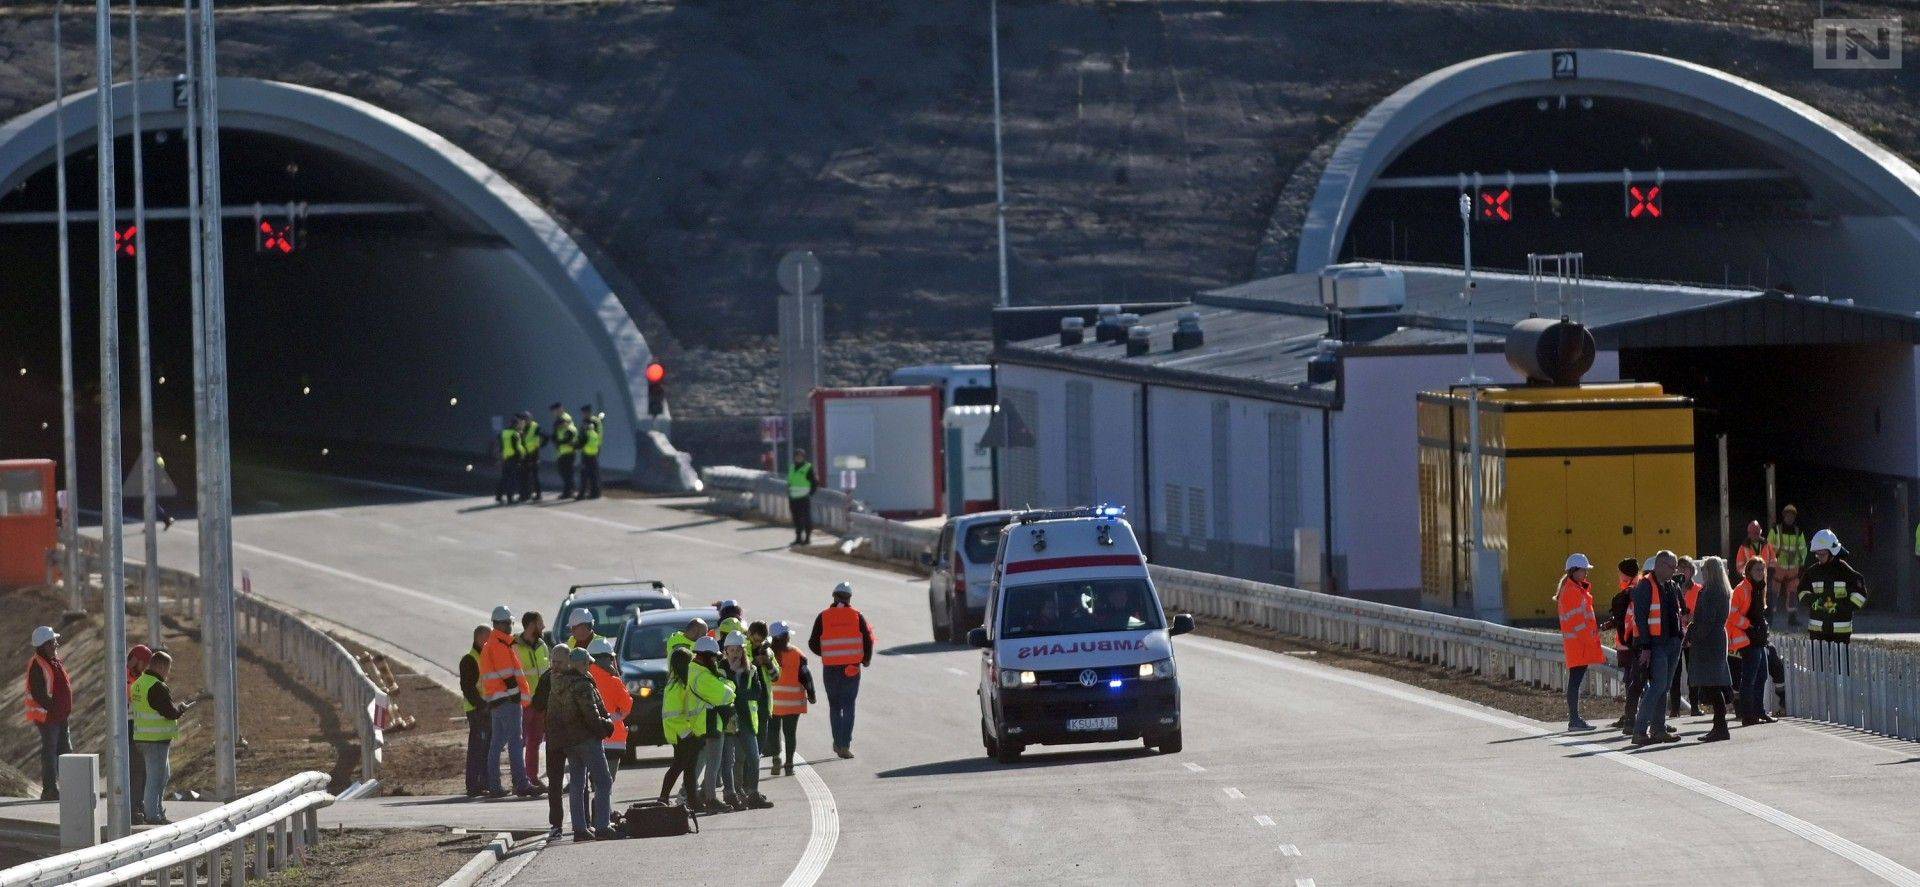 Polacy nie potrafią korzystać z tuneli drogowych. Eksperyment naukowczyni AGH